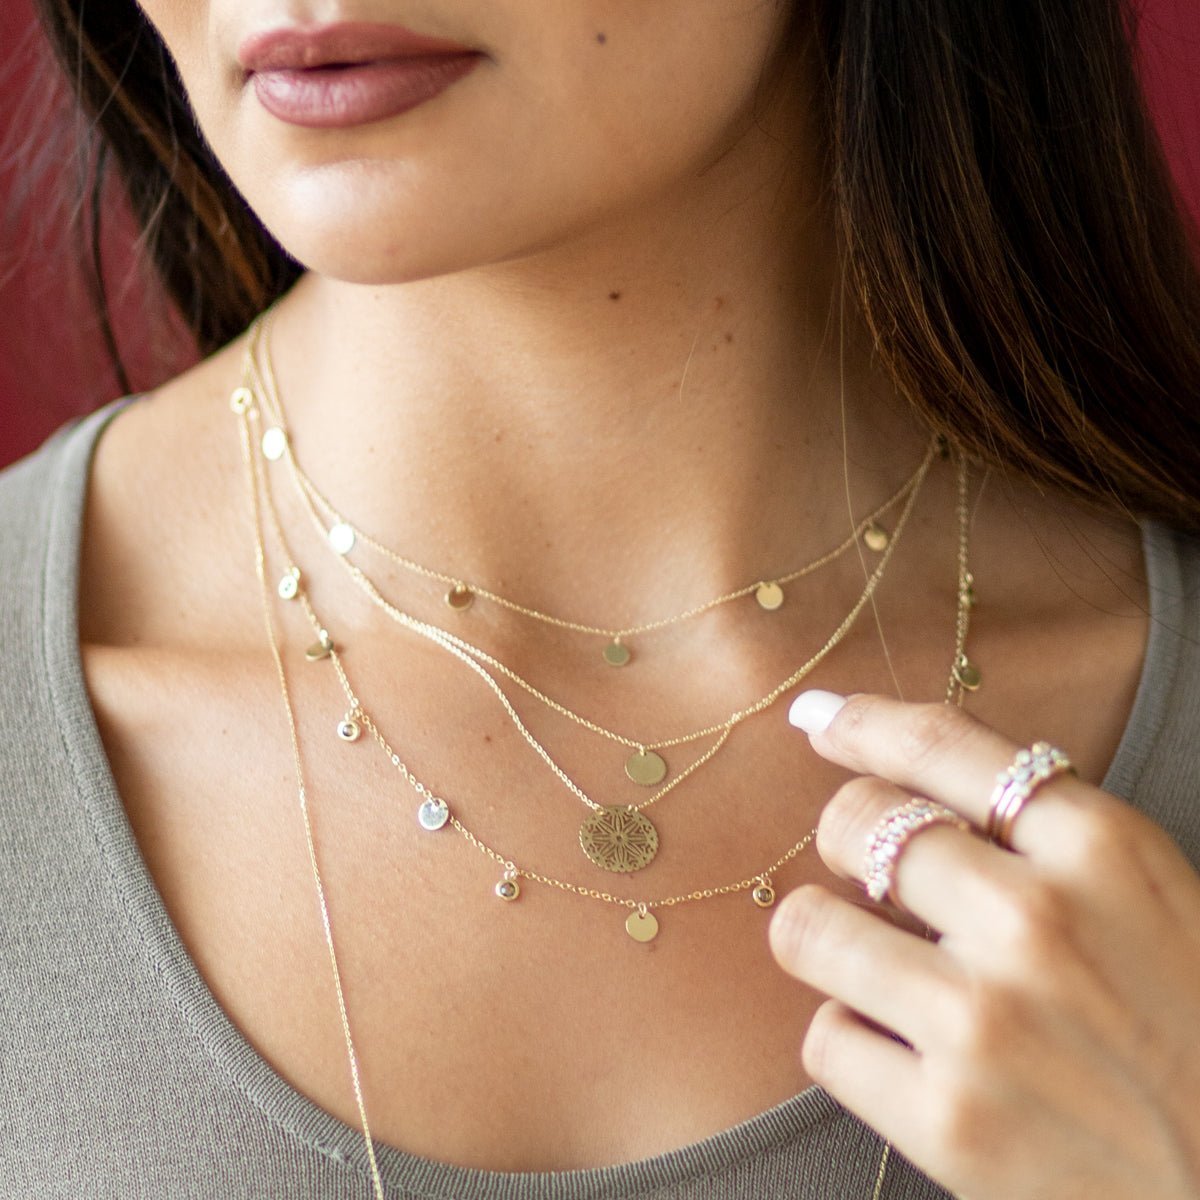 Double Wrap Disc & Medallion Necklace Necklaces Estella Collection #product_description# 17668 14k Layering Necklace Make Collection #tag4# #tag5# #tag6# #tag7# #tag8# #tag9# #tag10#